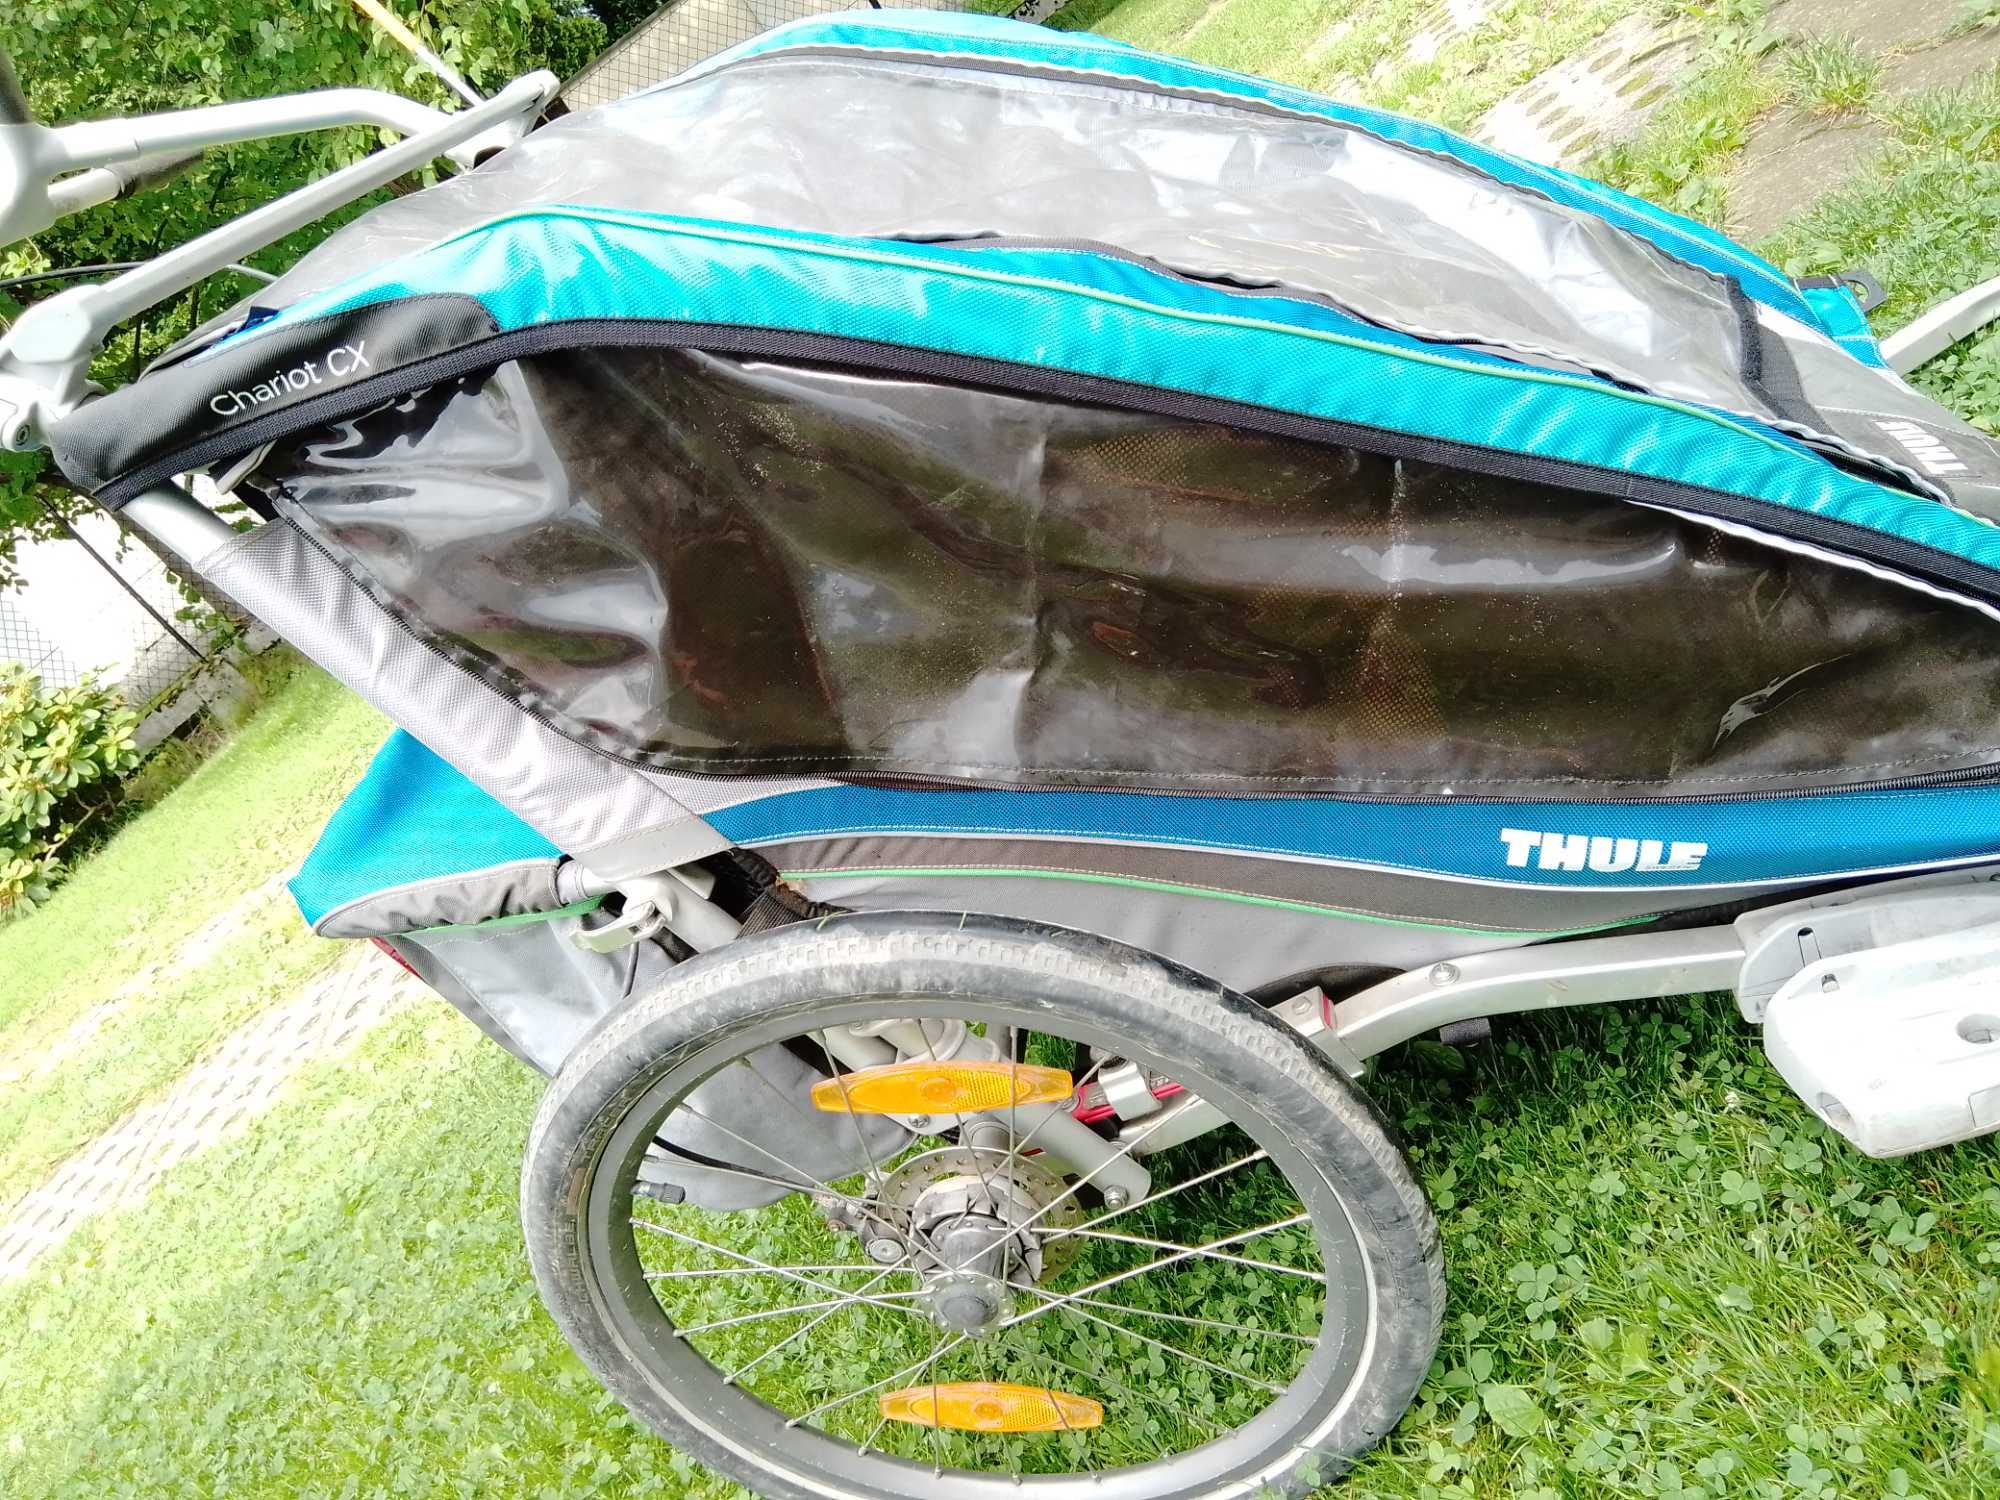 Thule, Chariot CX2, podwójna przyczepka rowerowa dla dzieci, niebieska